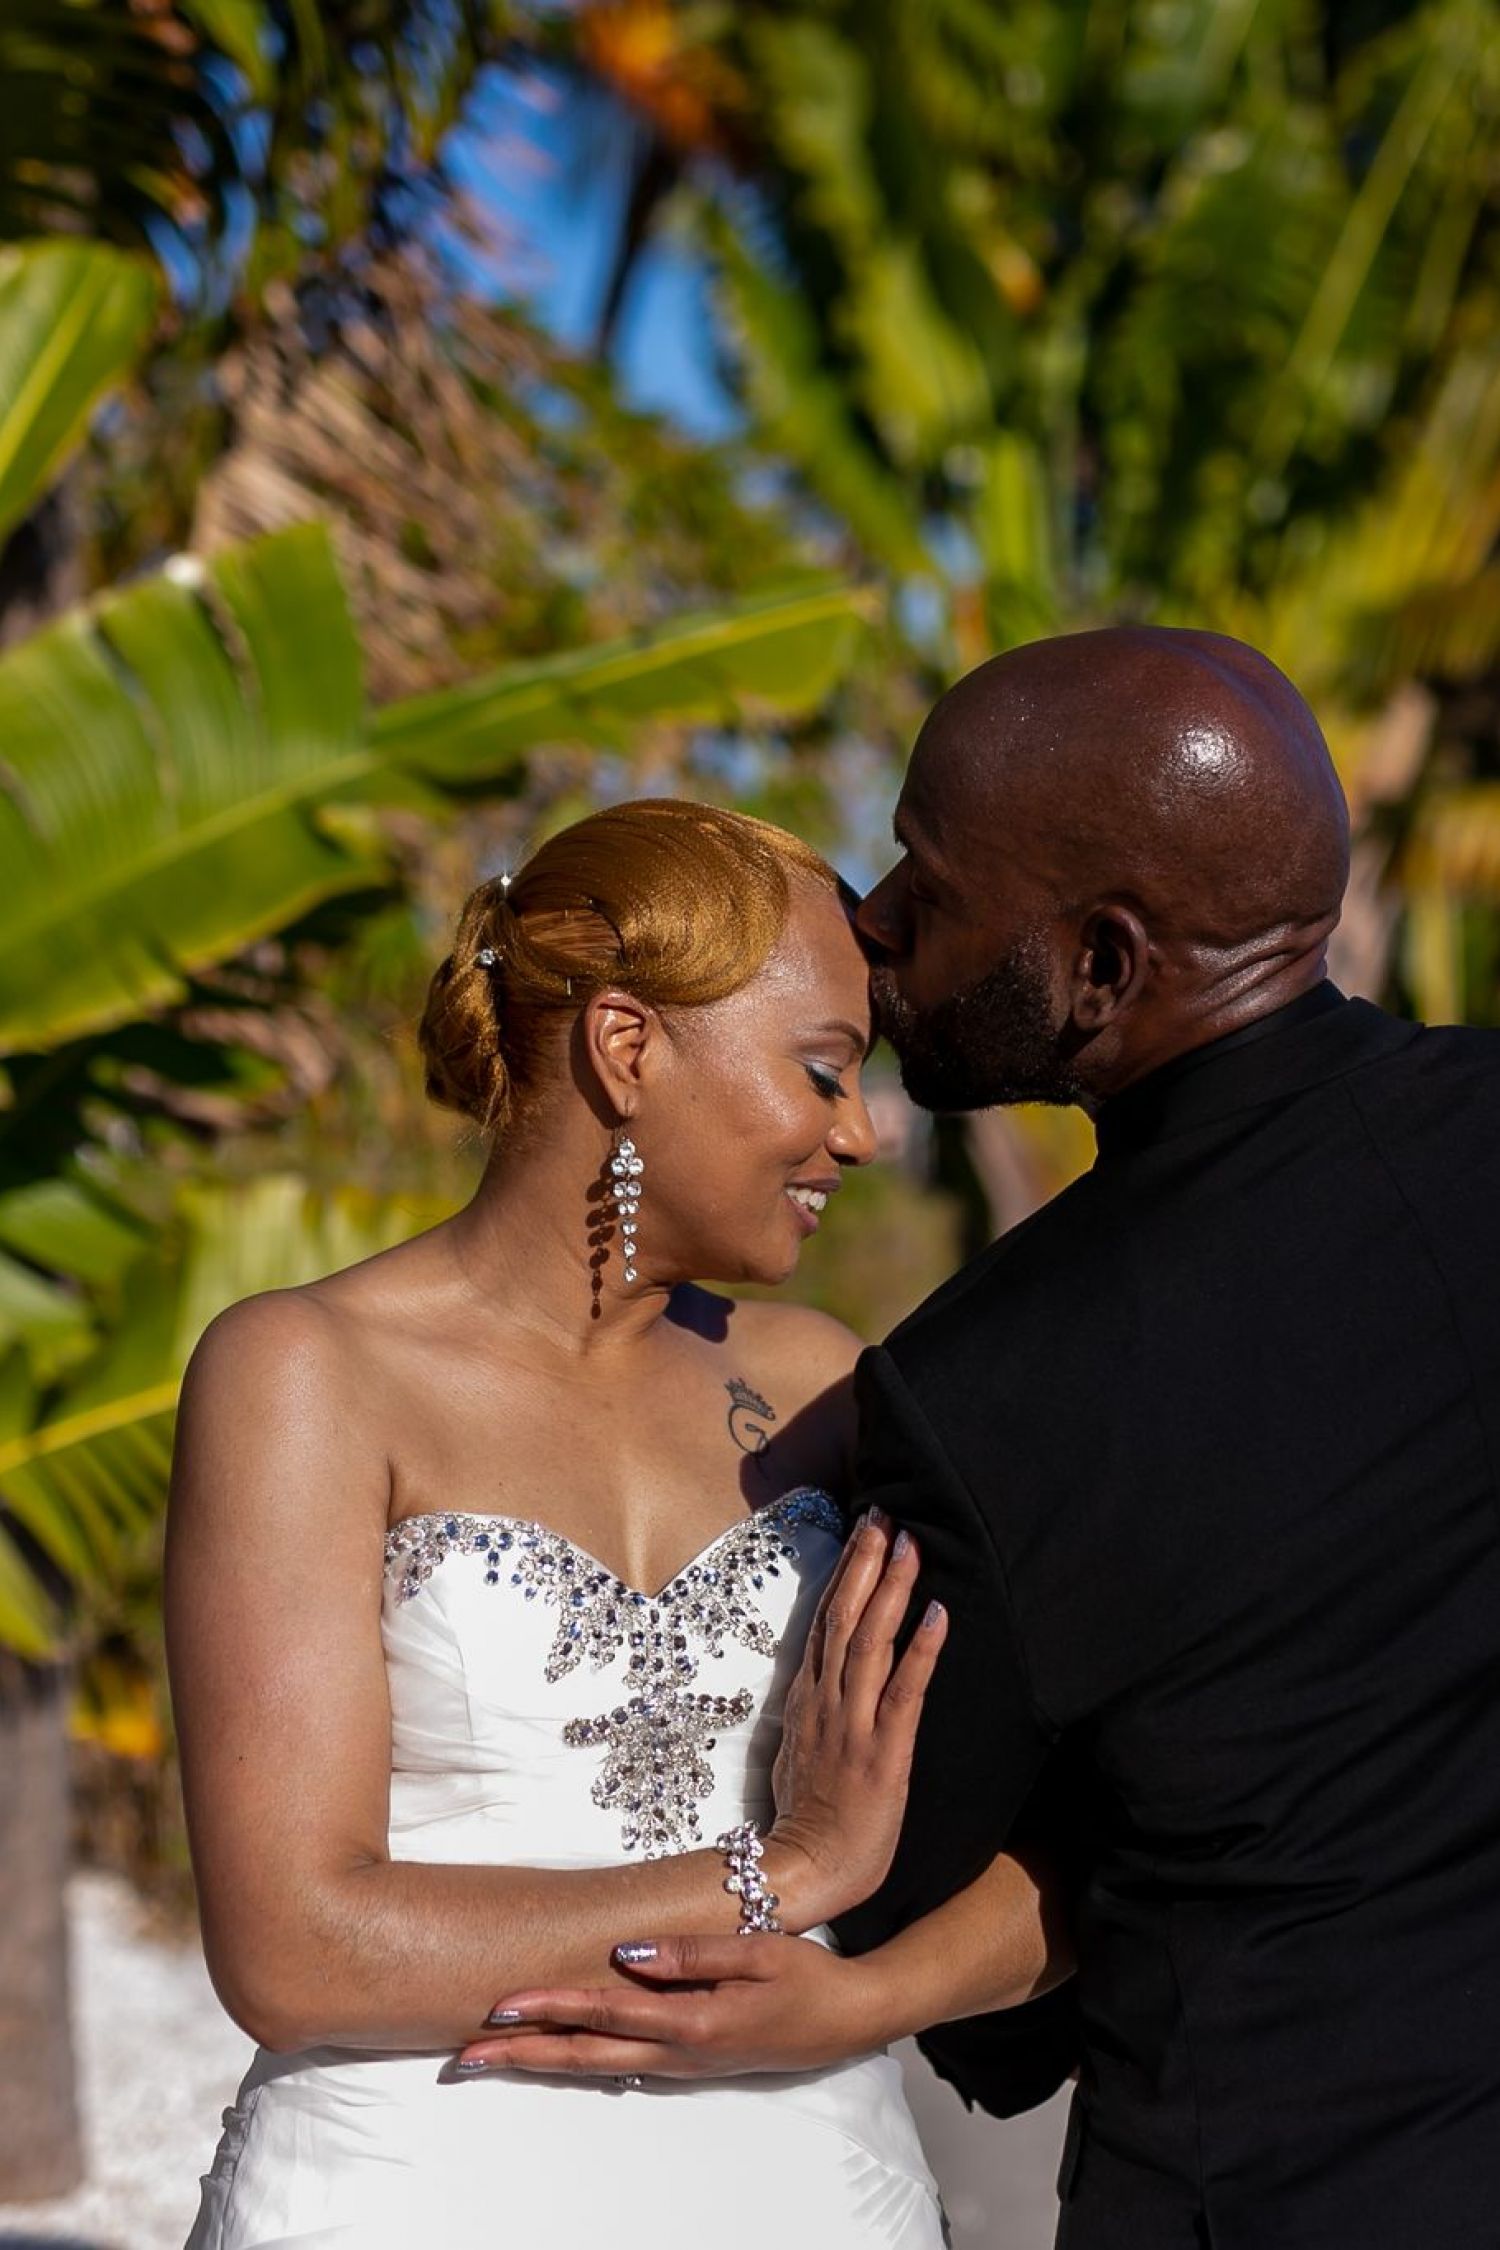 Dulce pareja vestida de novia compartiendo un beso al aire libre con plantas tropicales detrás